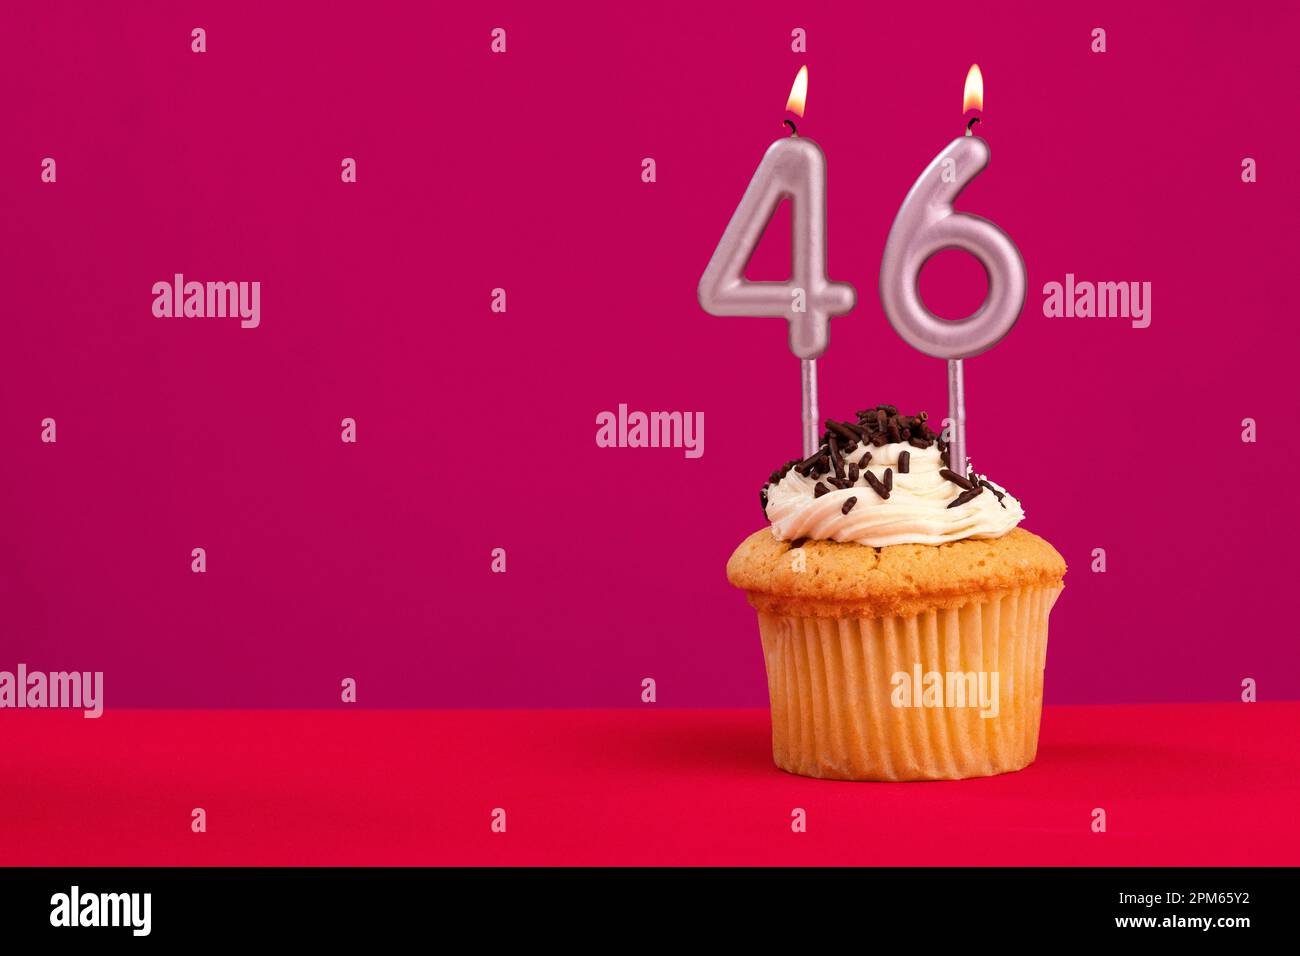 46 Number Cake | Order 46 Number Cake online | Tfcakes